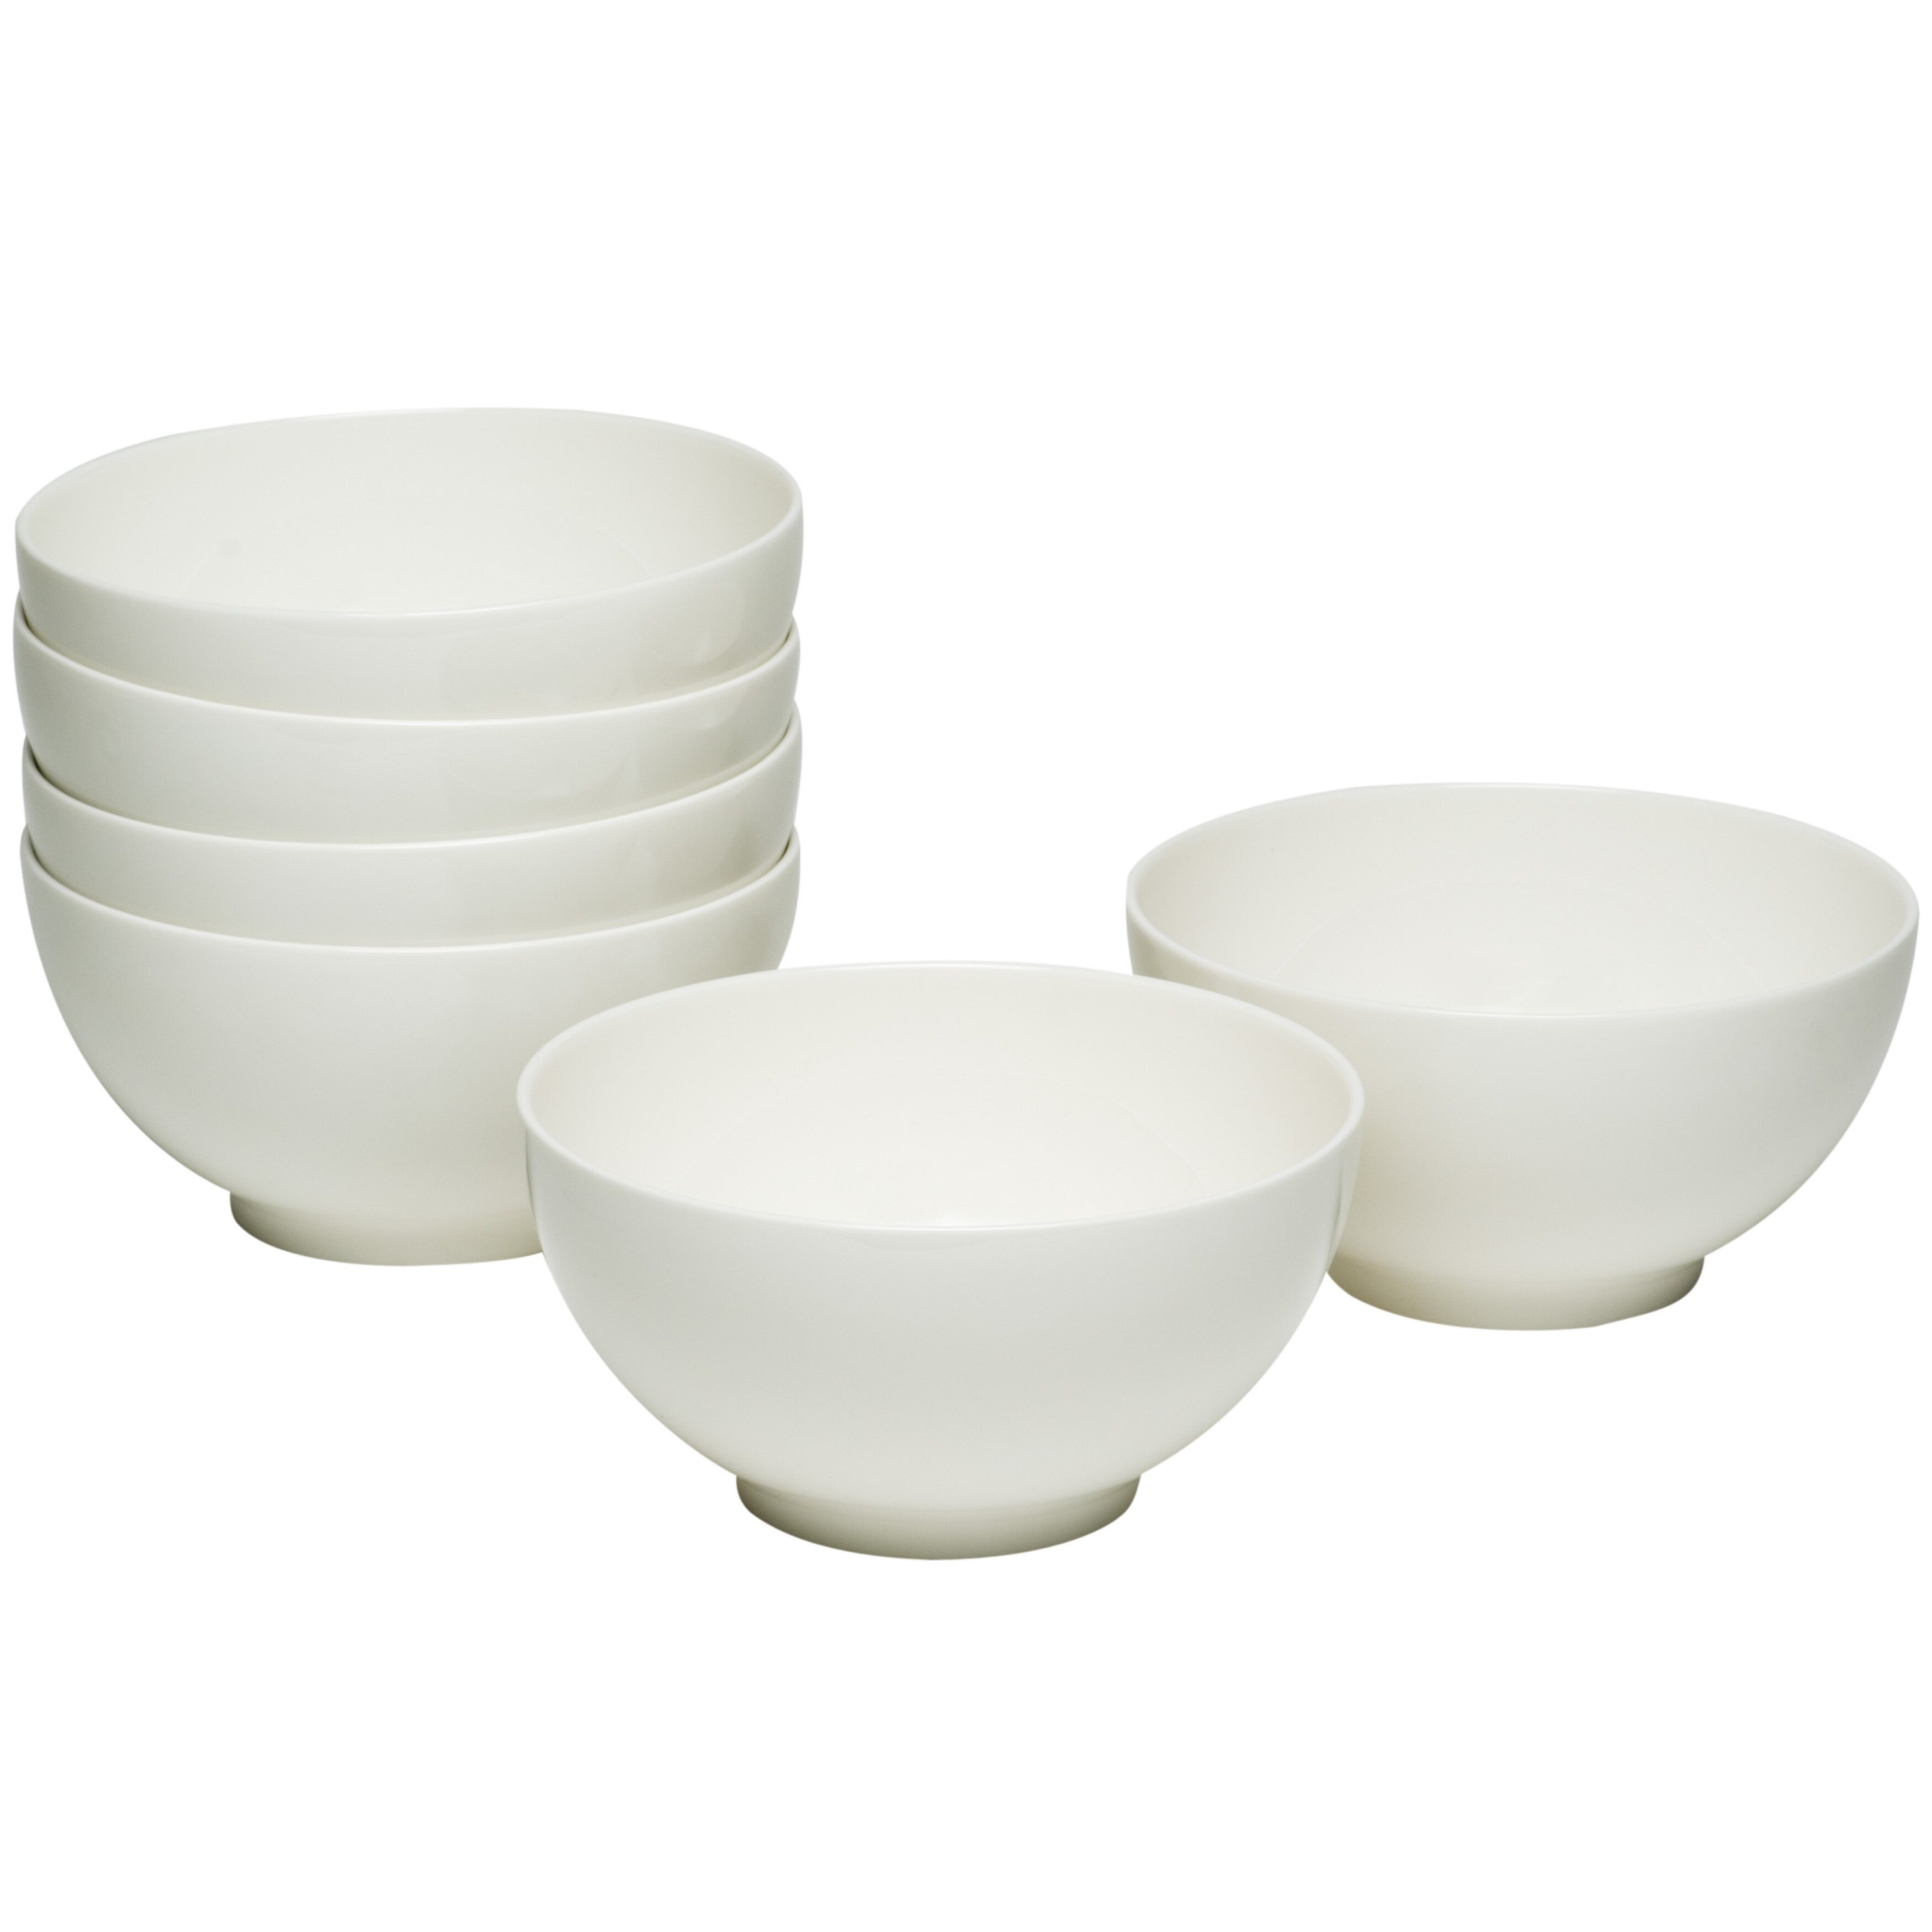 MALACASA Elisa 15 oz. White Porcelain Cereal Bowl White Rice Bowl